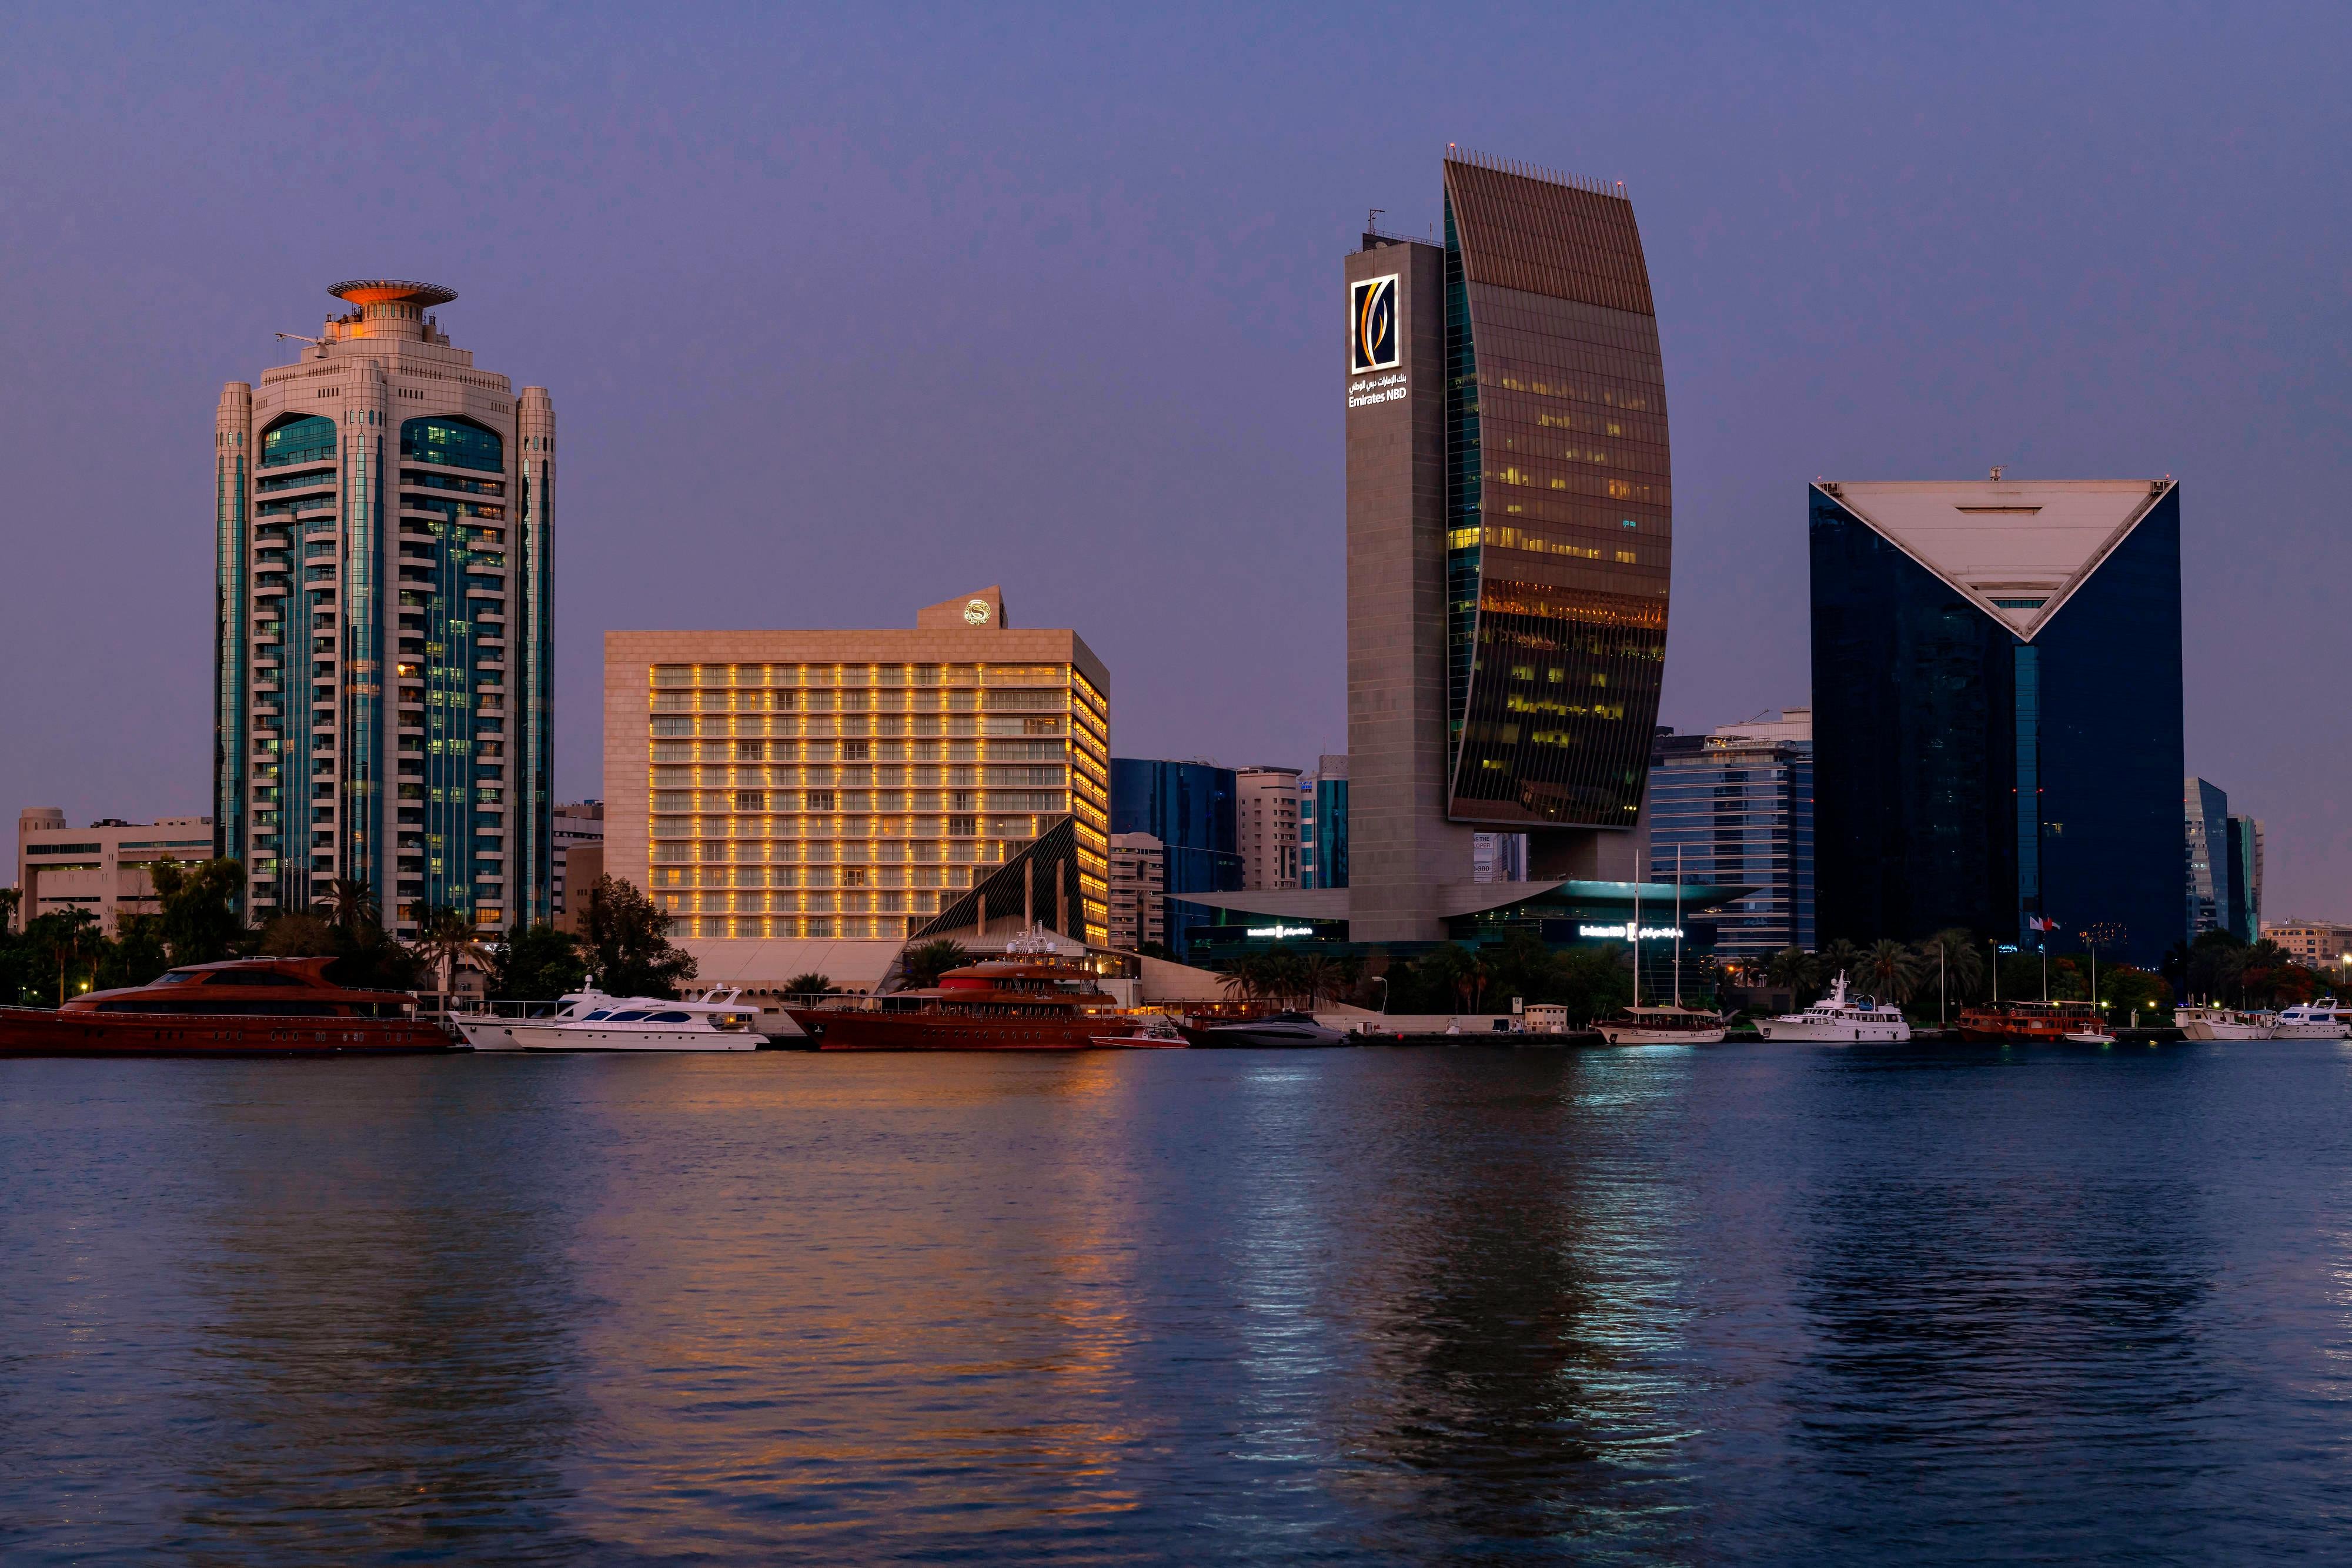 Hotels in Deira Dubai 